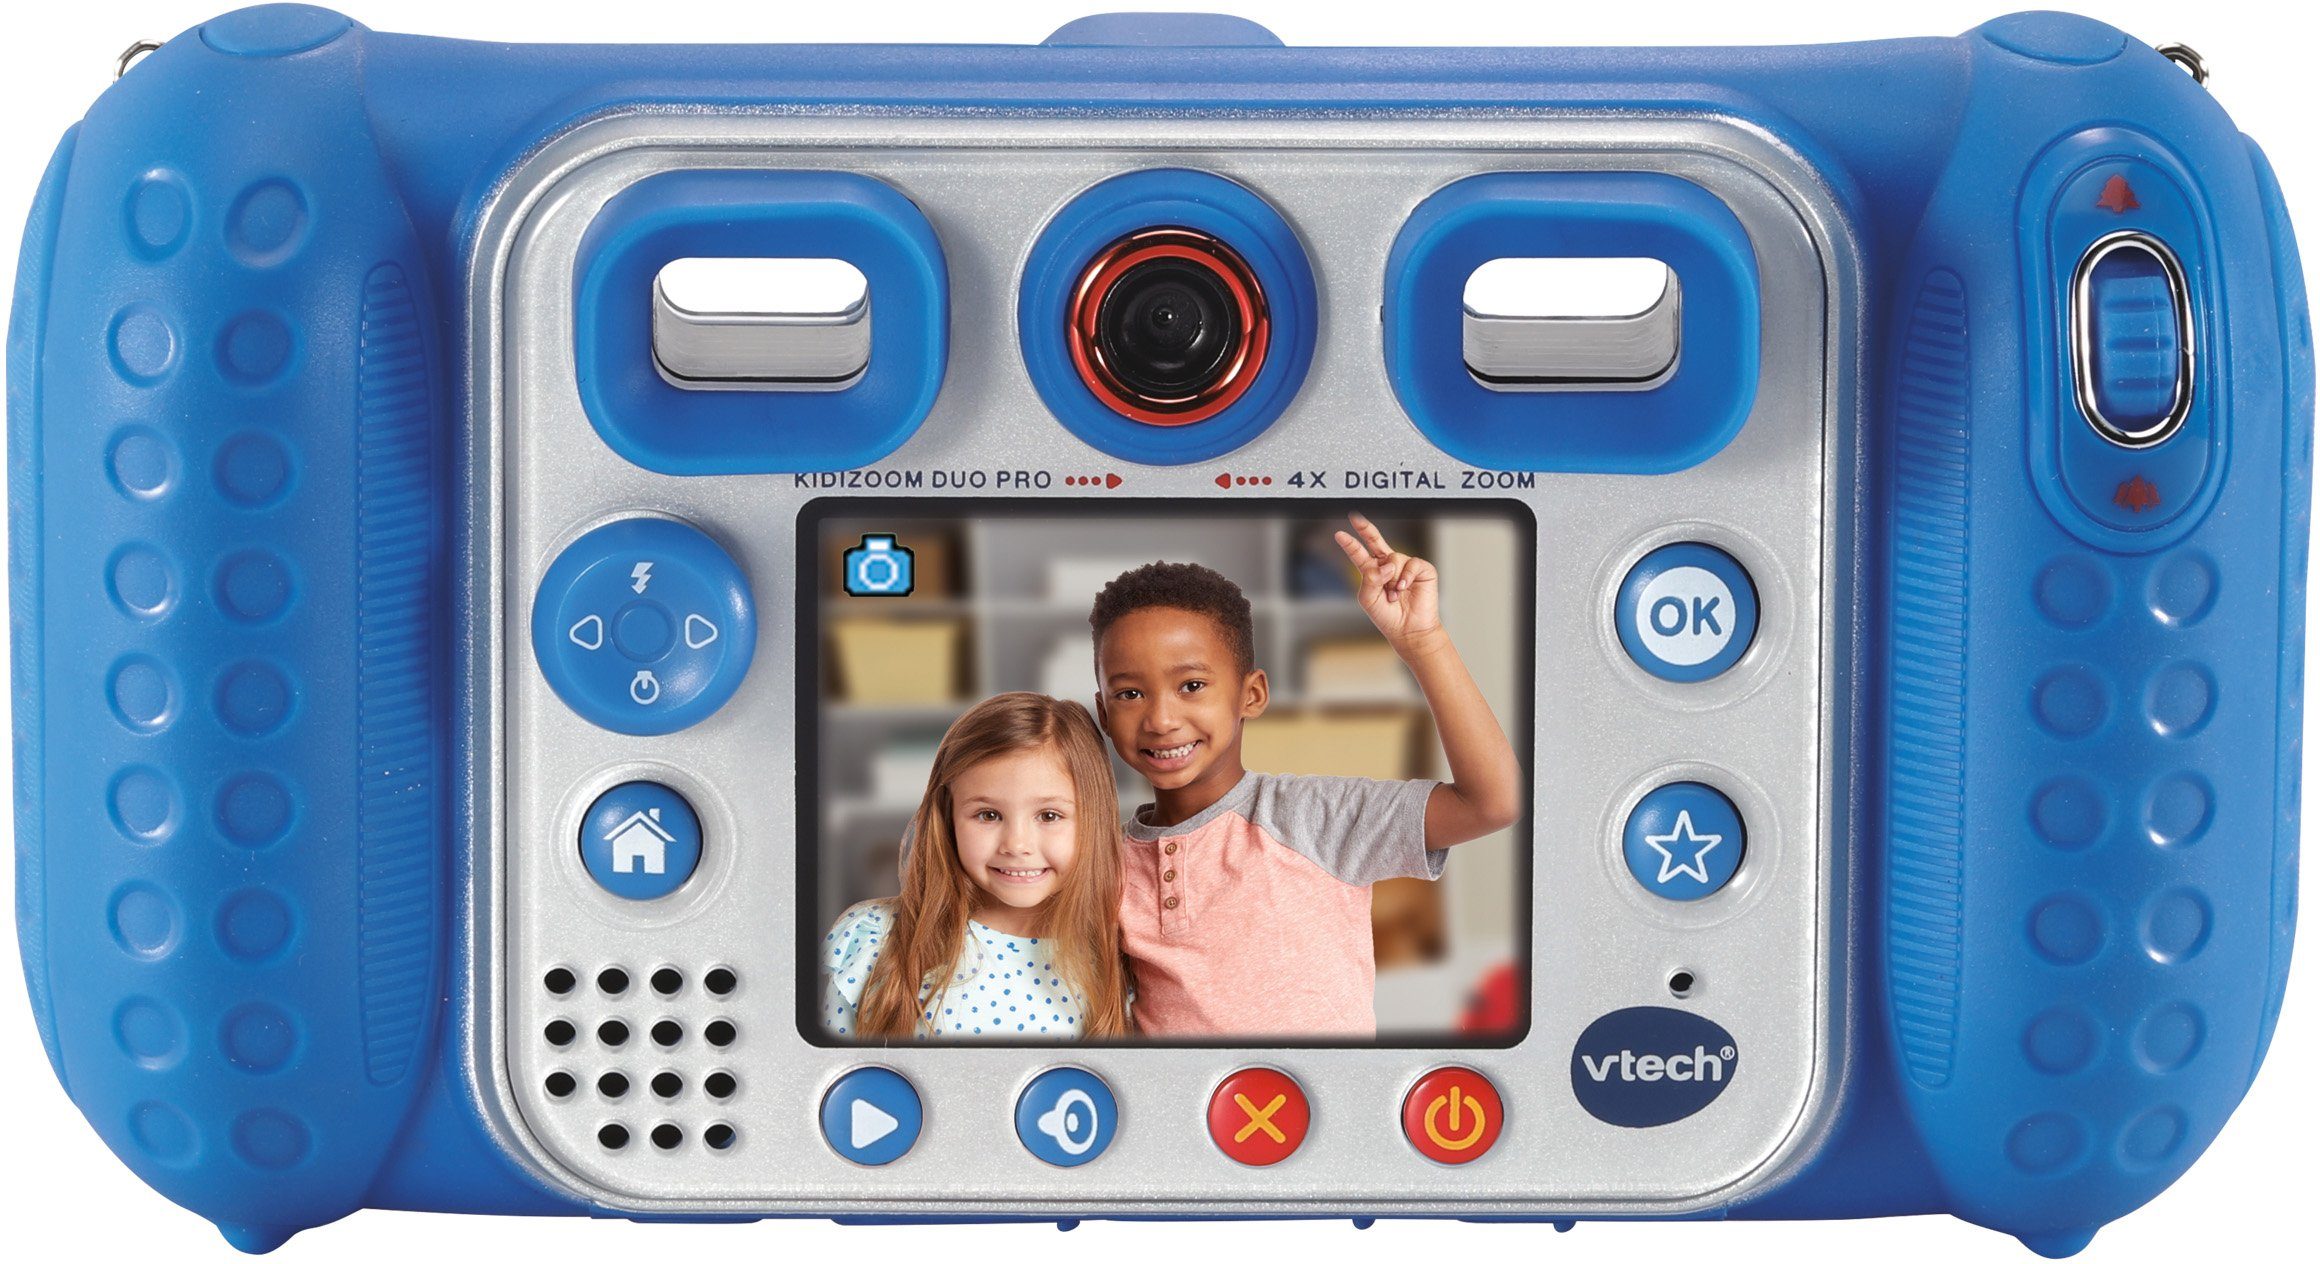 Kopfhörer) Duo KidiZoom blau (inkluisve Pro Kinderkamera Vtech®